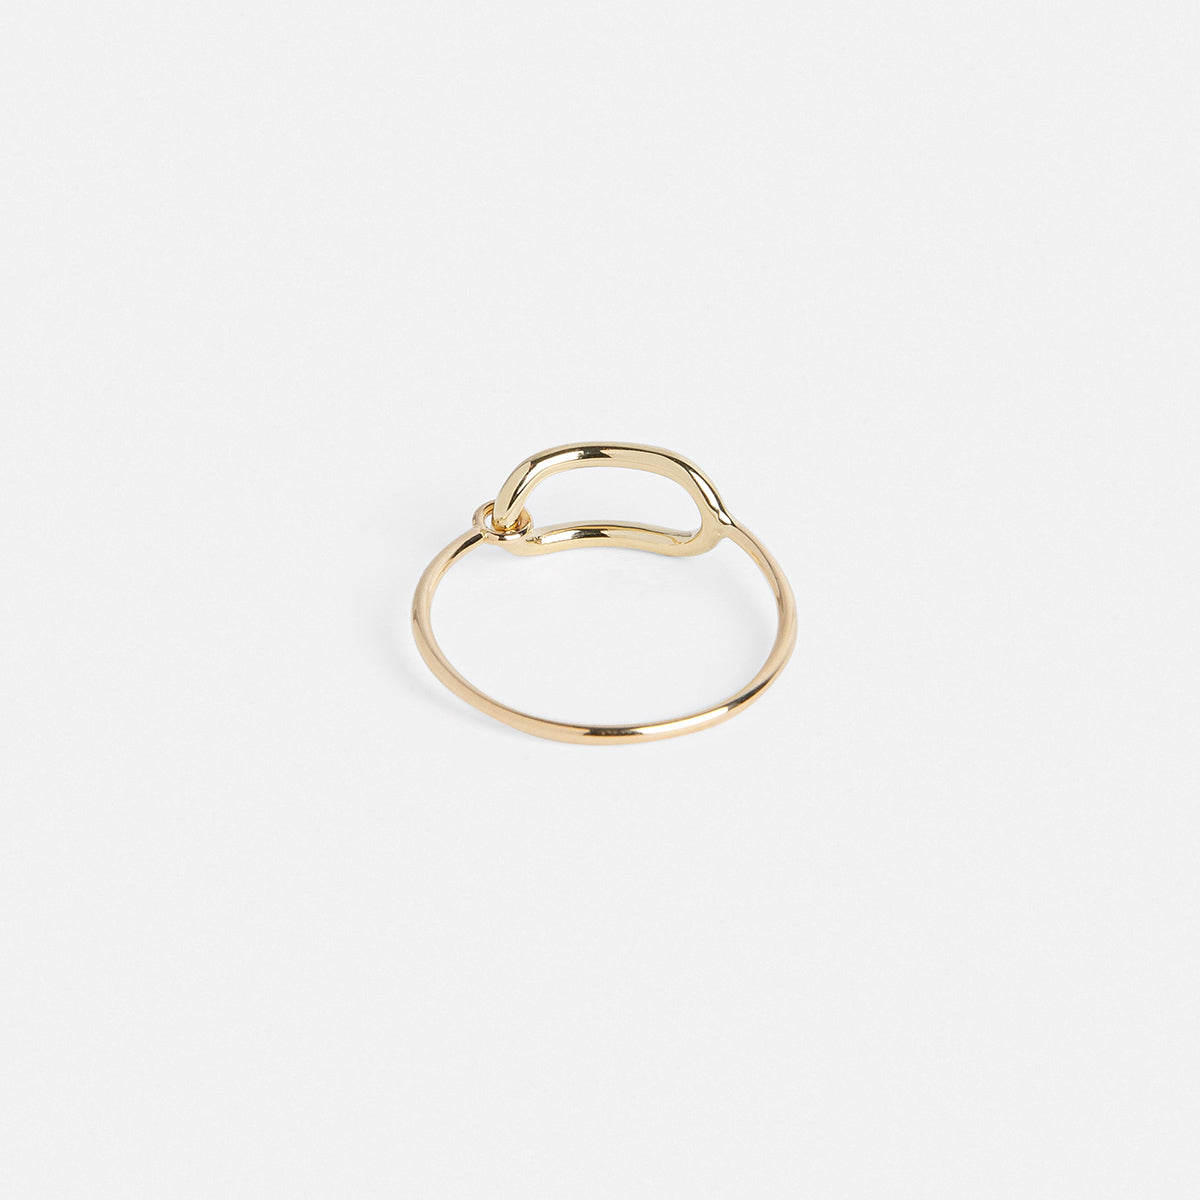 Vel Minimalist Ring in 14k Gold by SHW Fine Jewelry